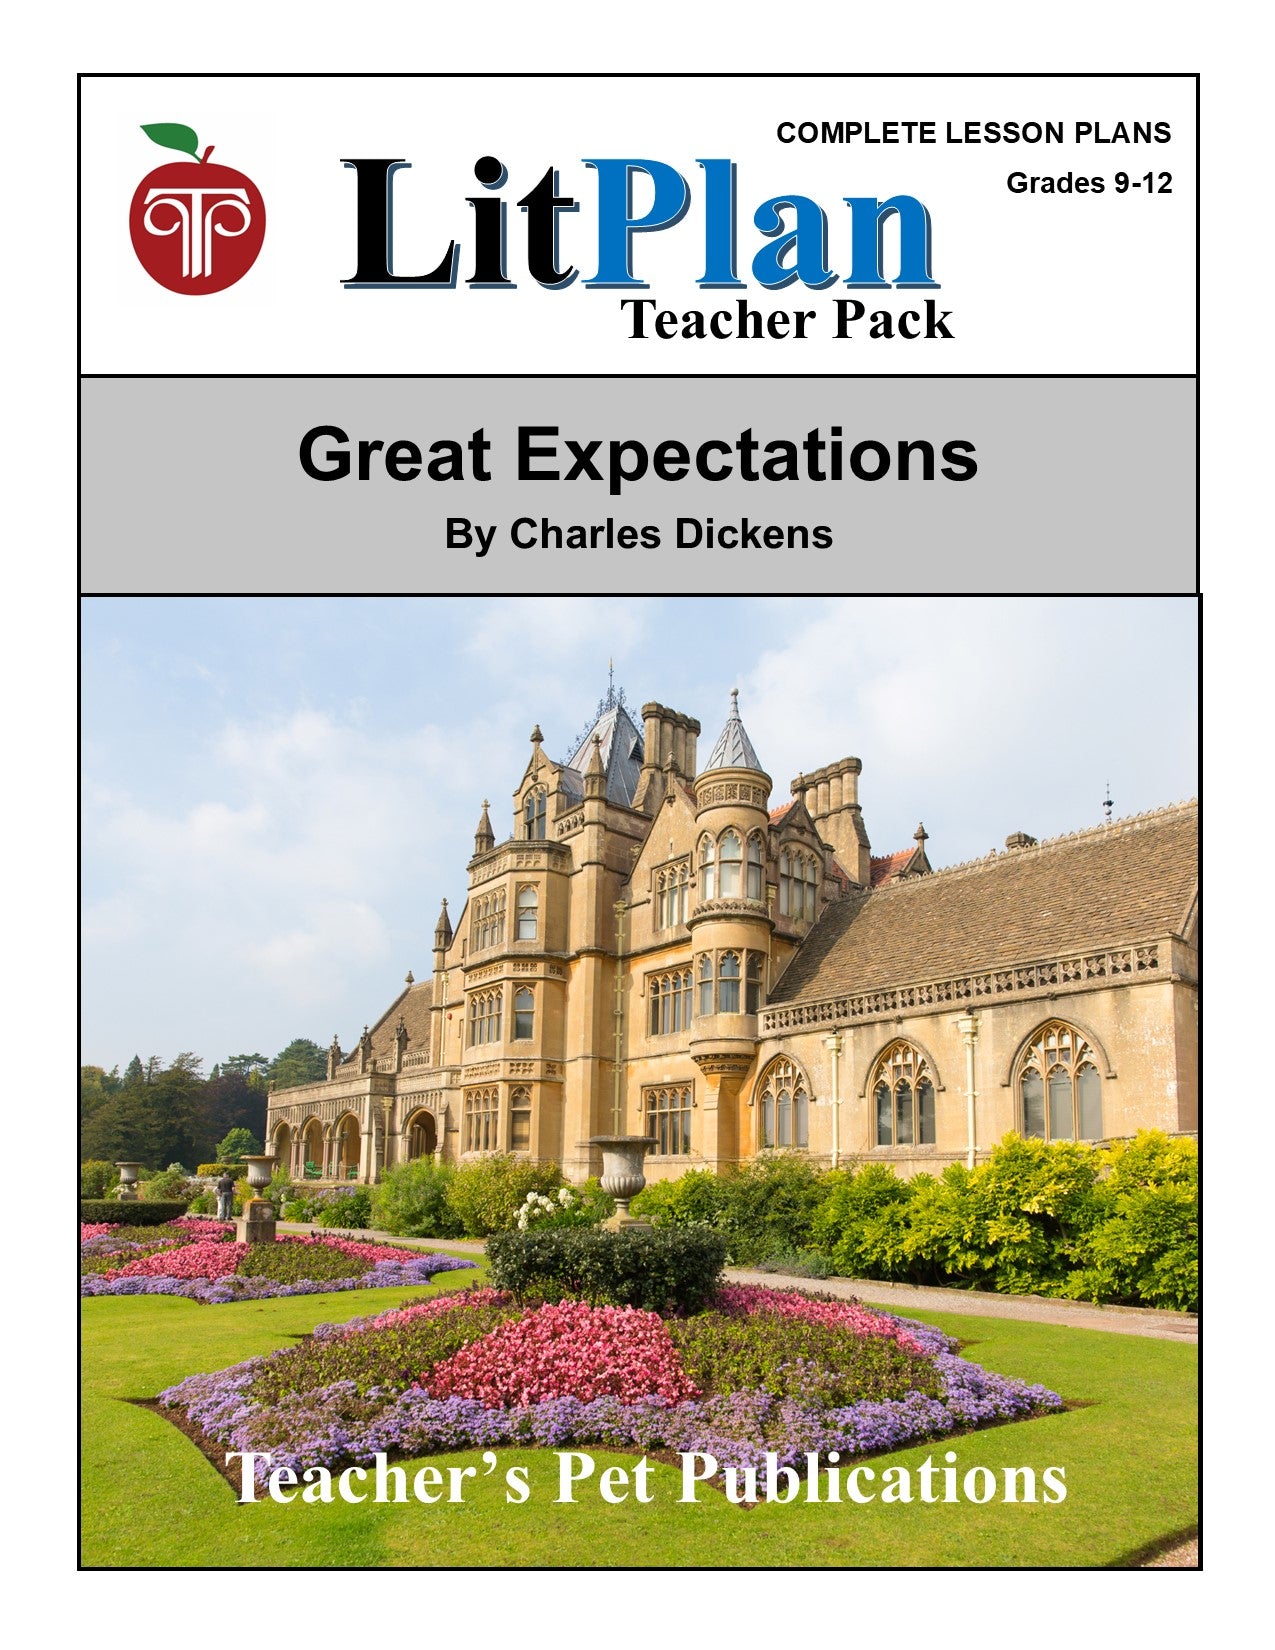 Great Expectations: LitPlan Teacher Pack Grades 9-12